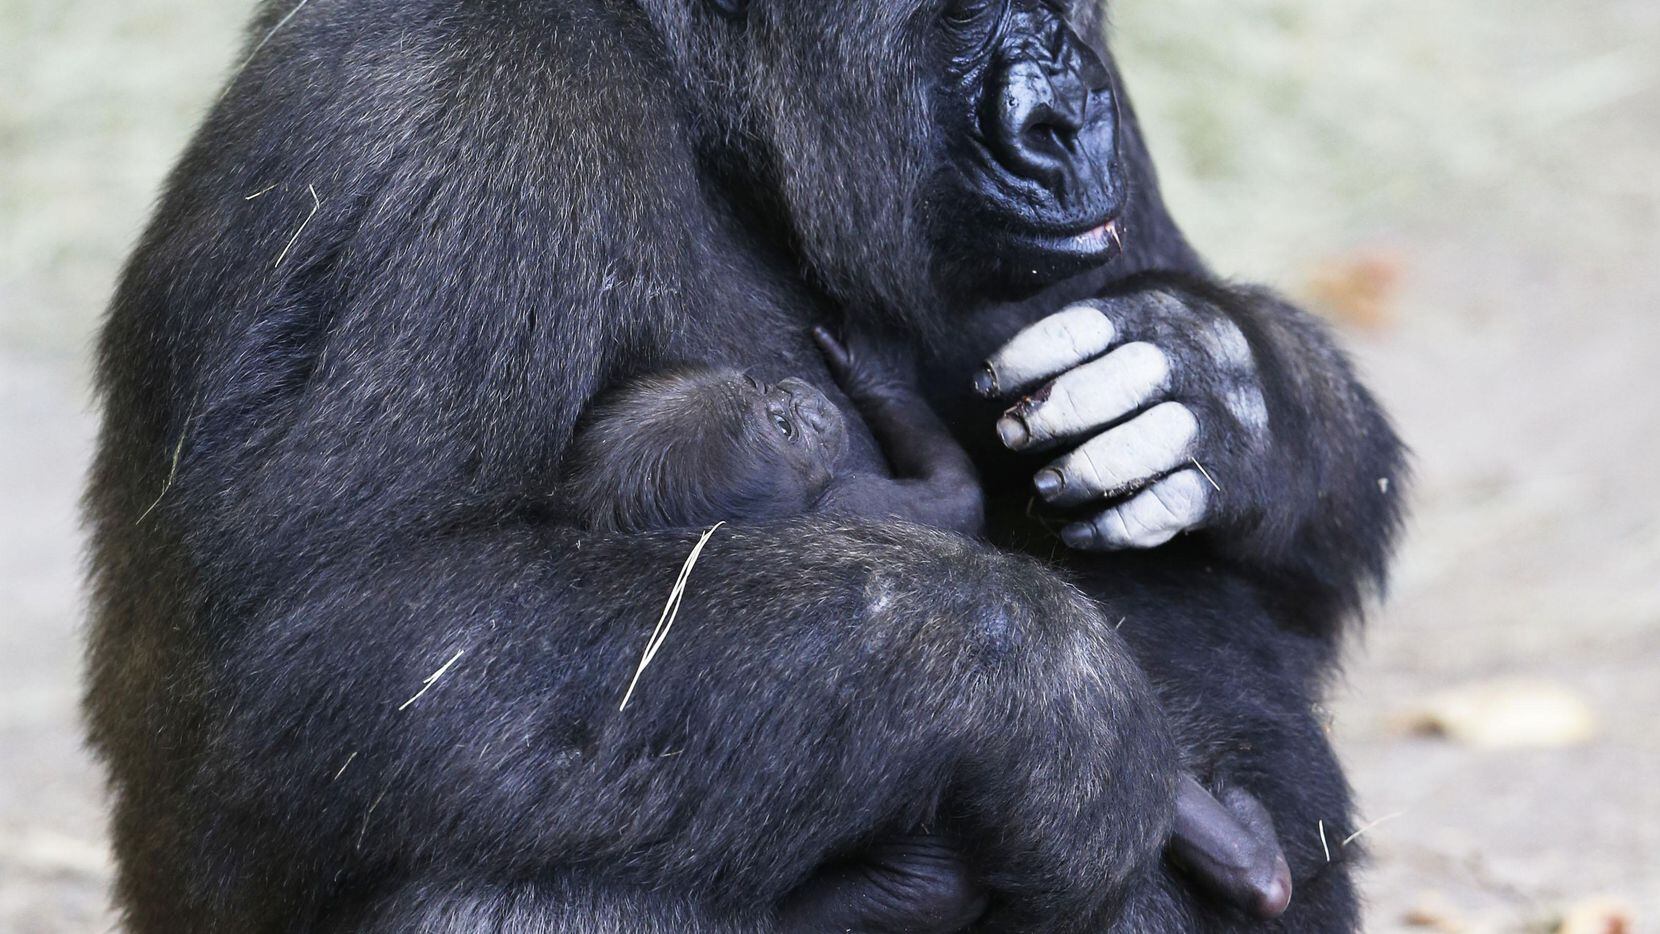 La madre gorila Hope sostiene a su cría en el Zoológico de Dallas. (DMN/VERNON BRYANT)
